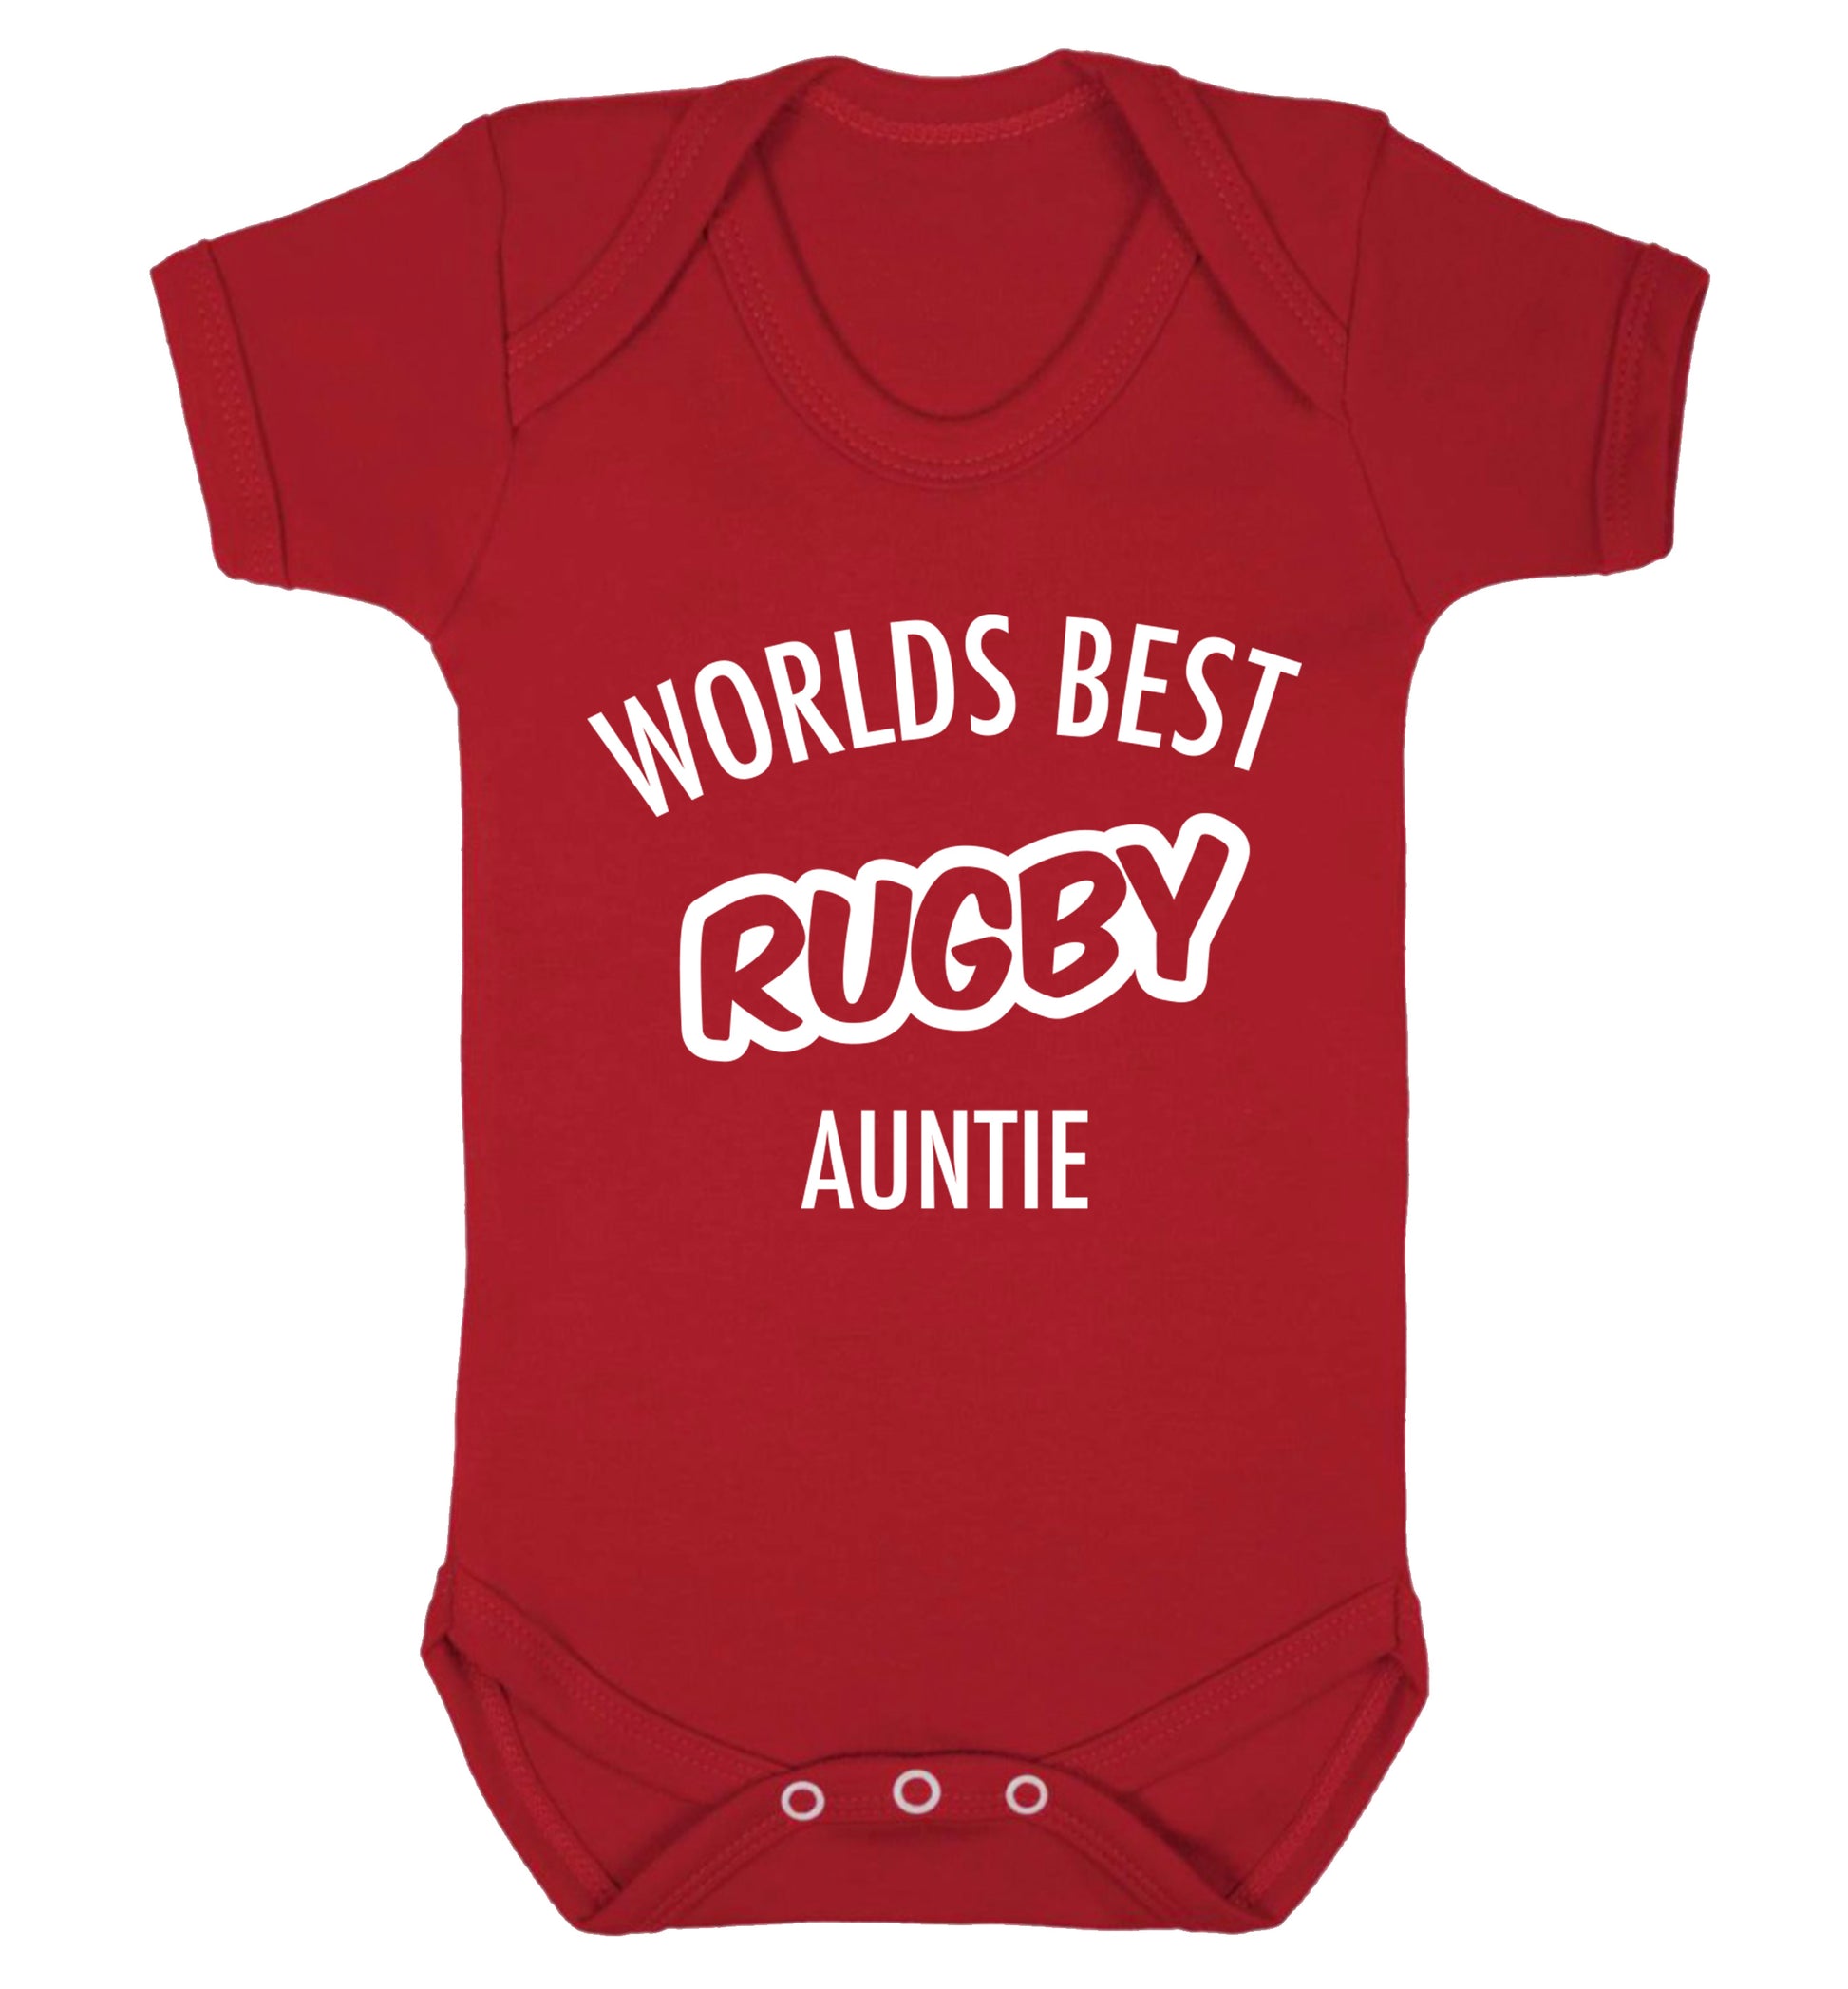 Worlds best rugby auntie Baby Vest red 18-24 months